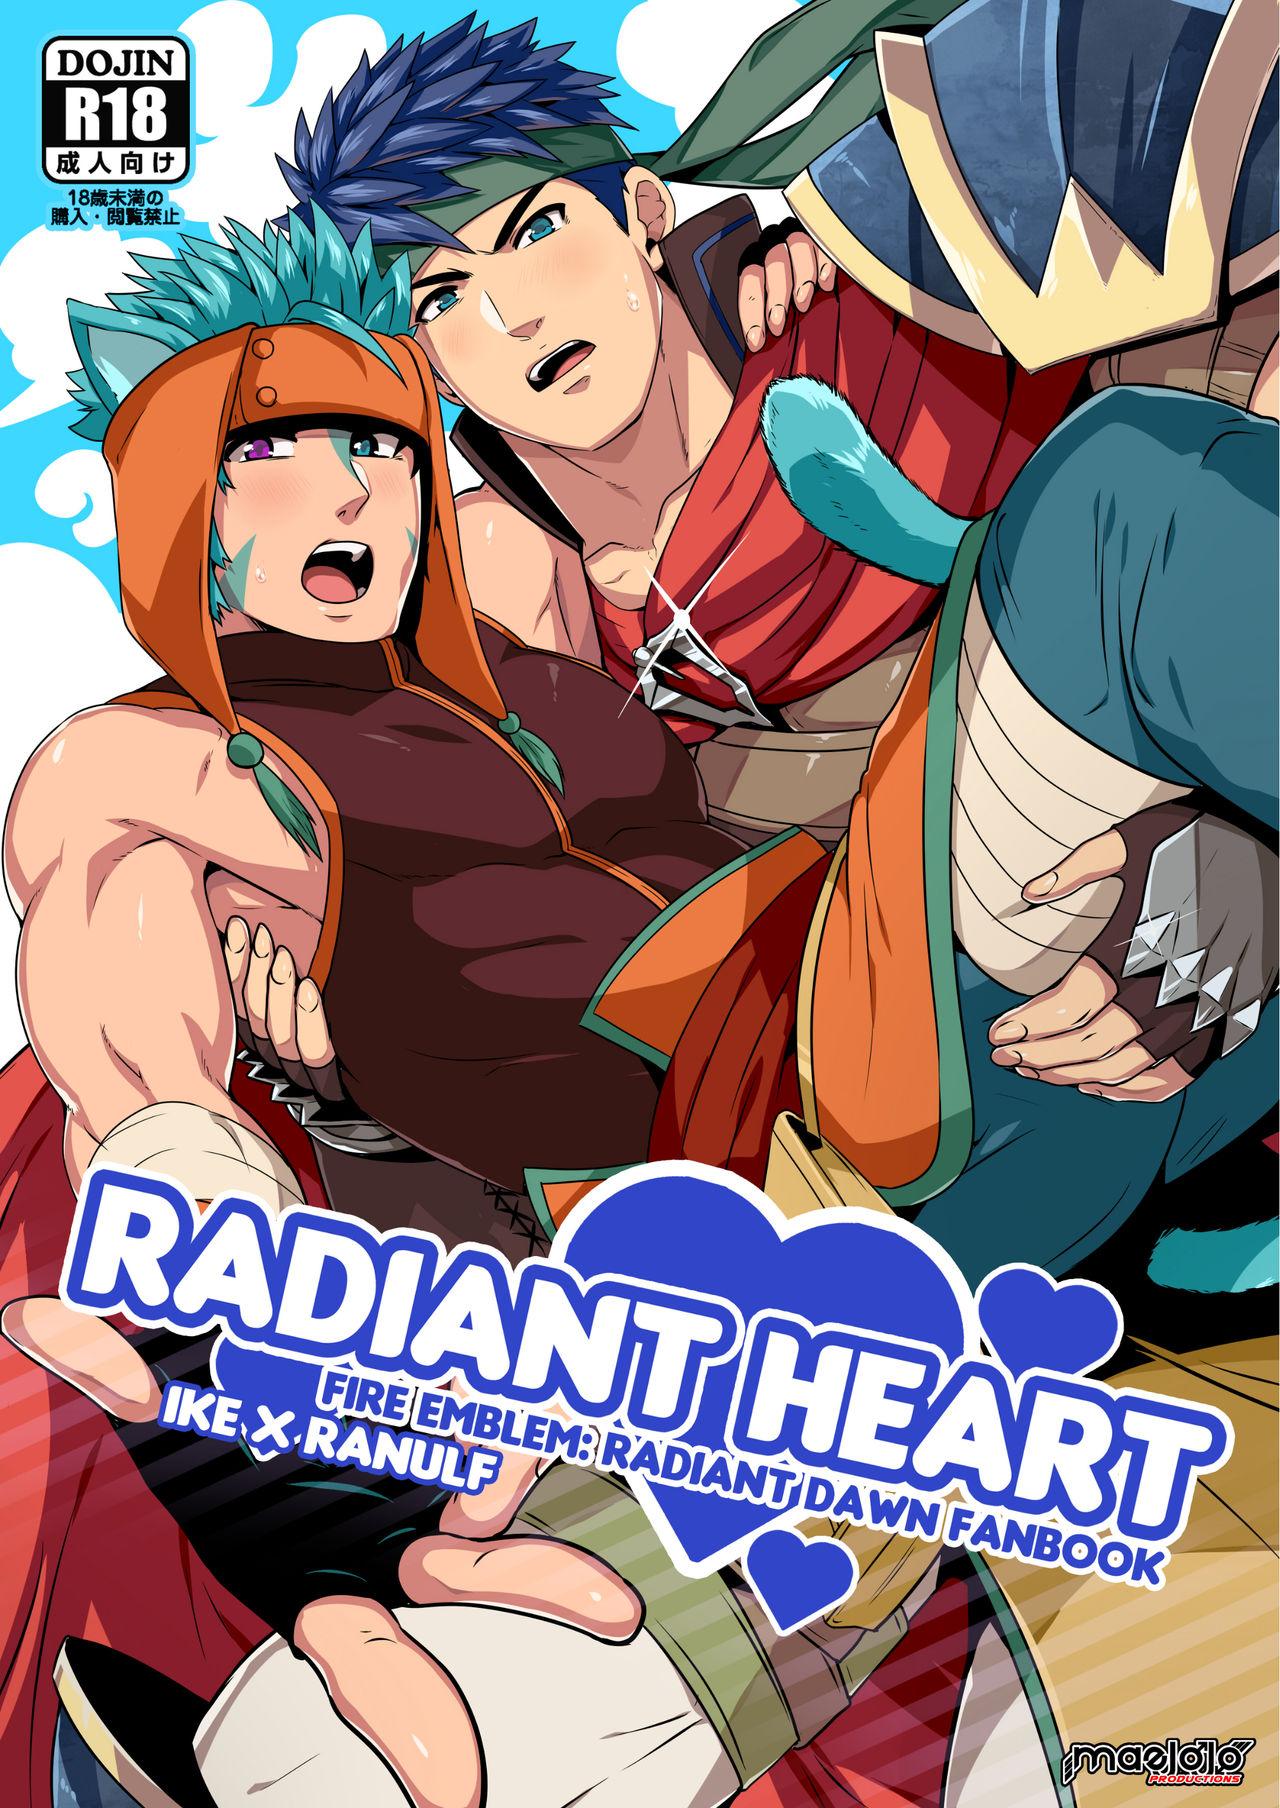 RADIANT HEART 0